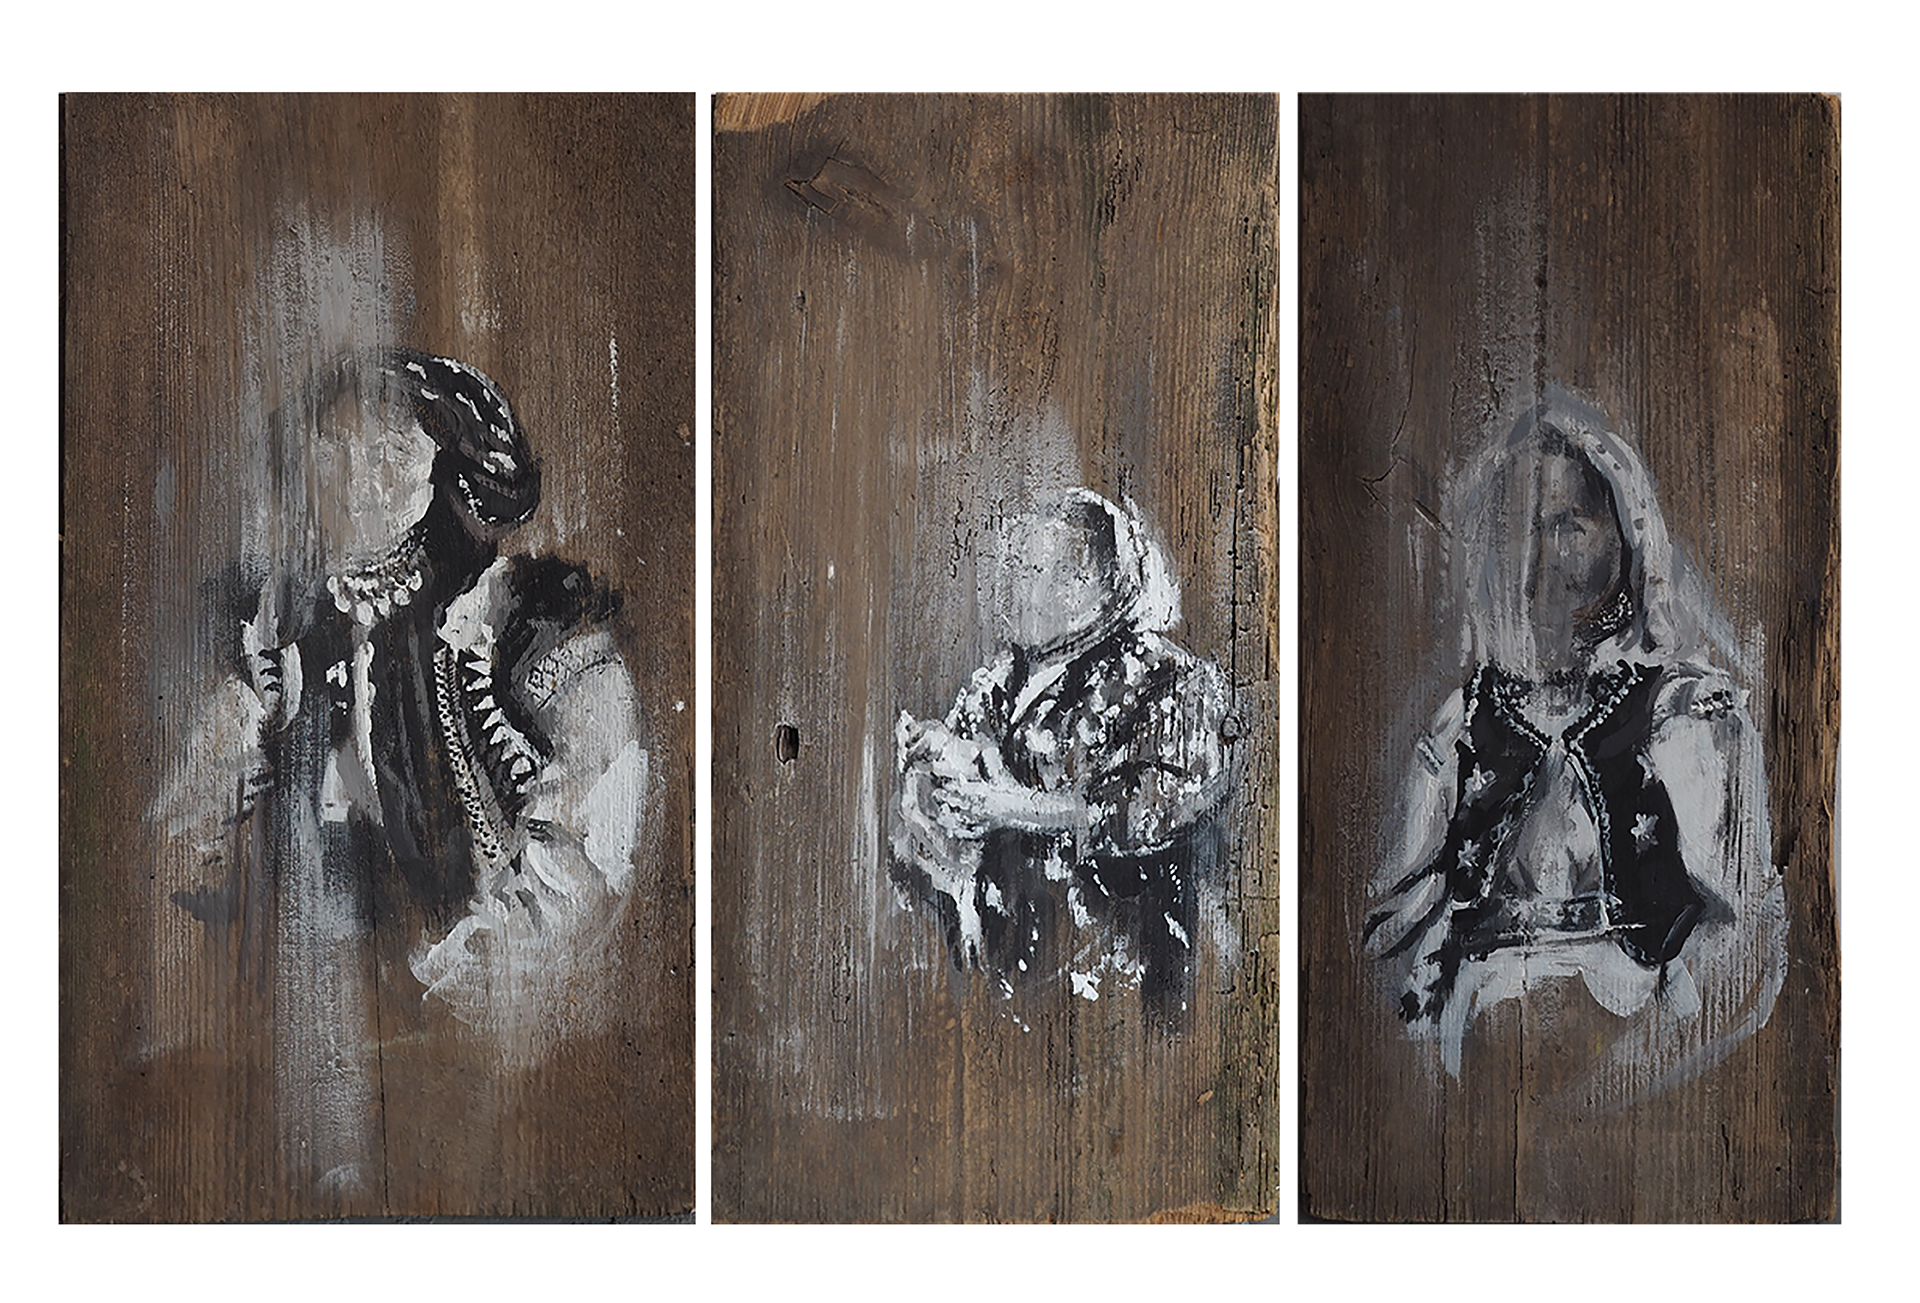 Trzy biało-czarne portrety wykonane na starej desce. Deski są ciemnobrązowe i stanowią tło. Każdy obraz przedstawia portret kobiety w stroju ludowym. Ich twarze są do tego stopnia rozmazane, że stają się nierozpoznawalne.